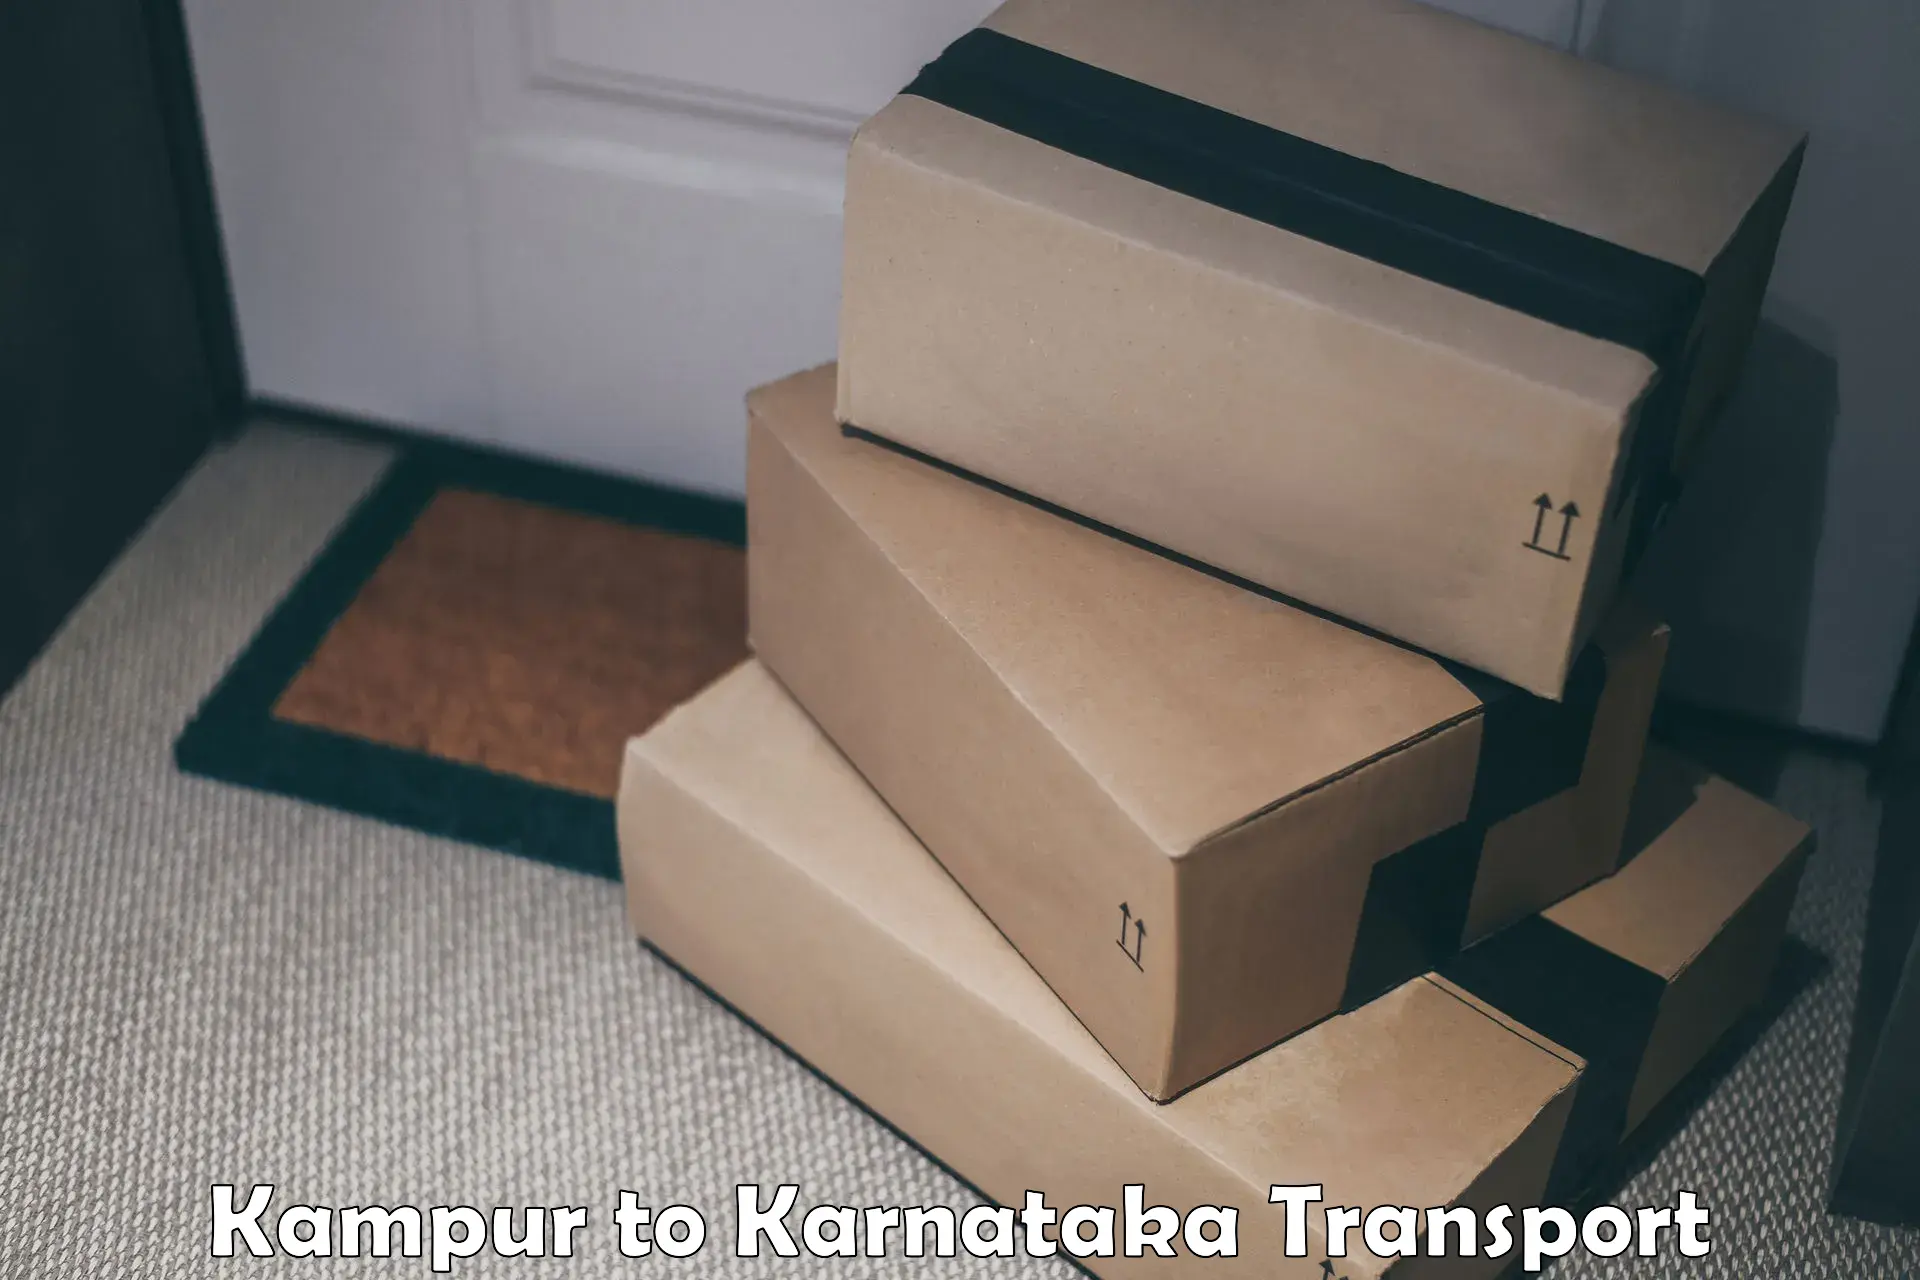 Pick up transport service Kampur to Hospet